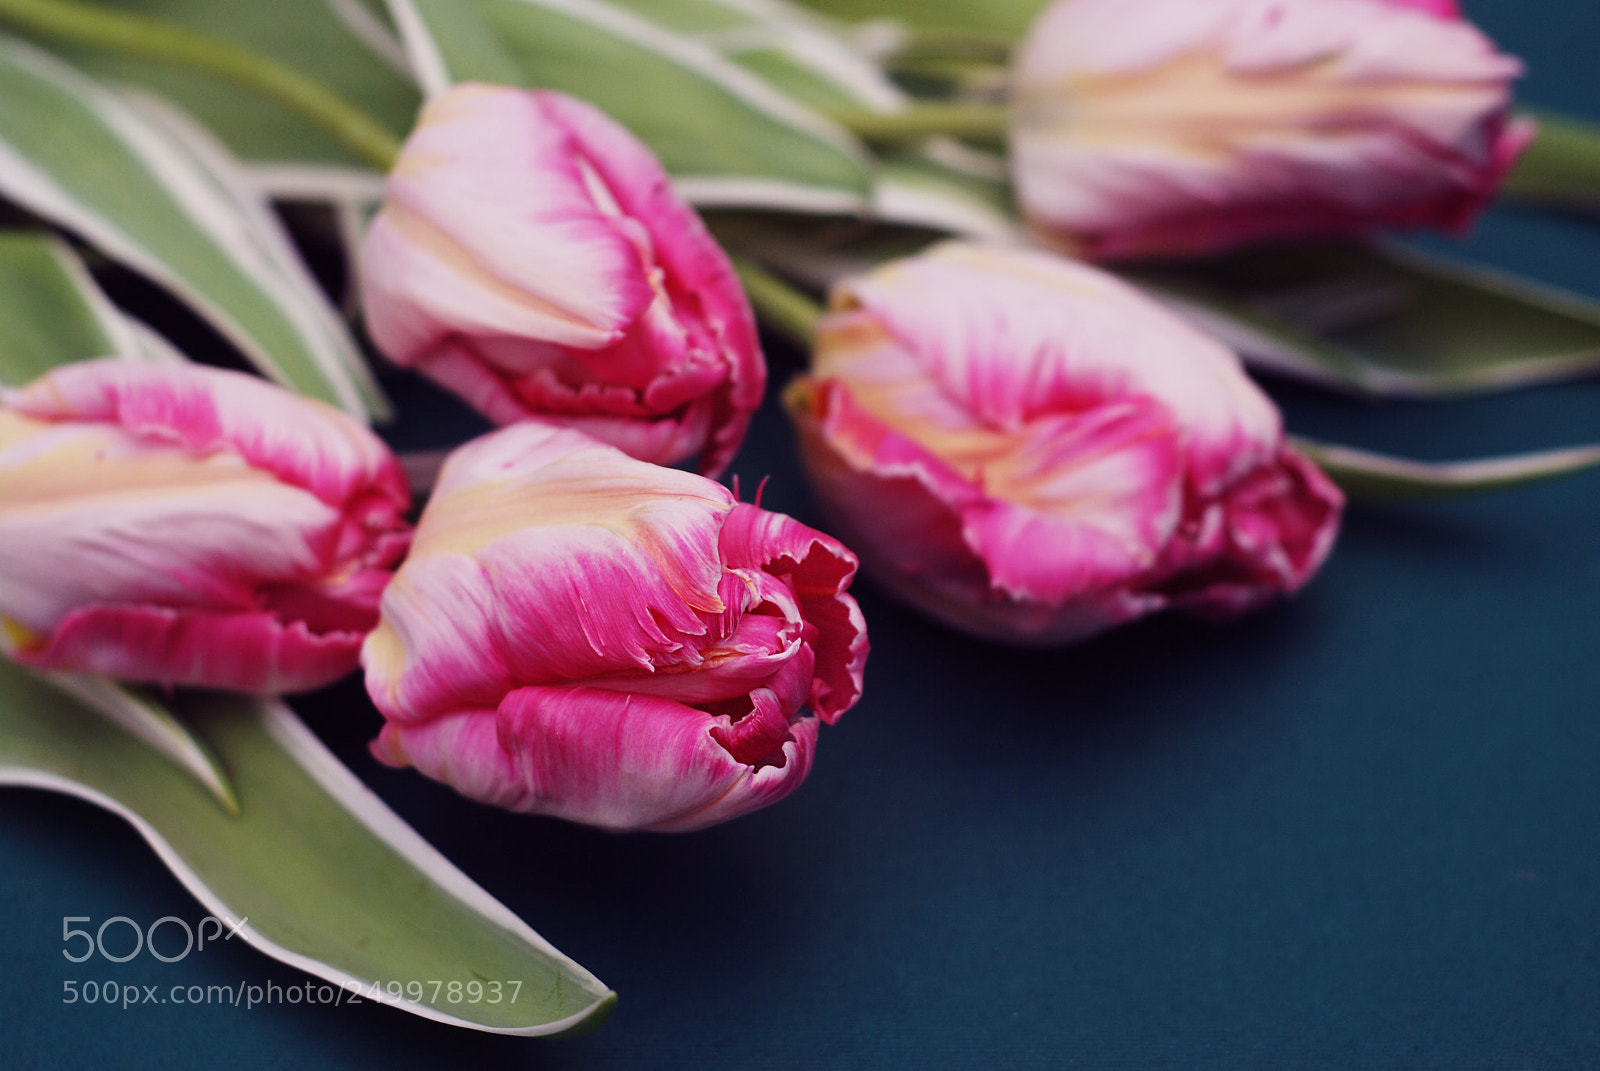 Nikon D80 sample photo. Pink spring parrot tulip photography